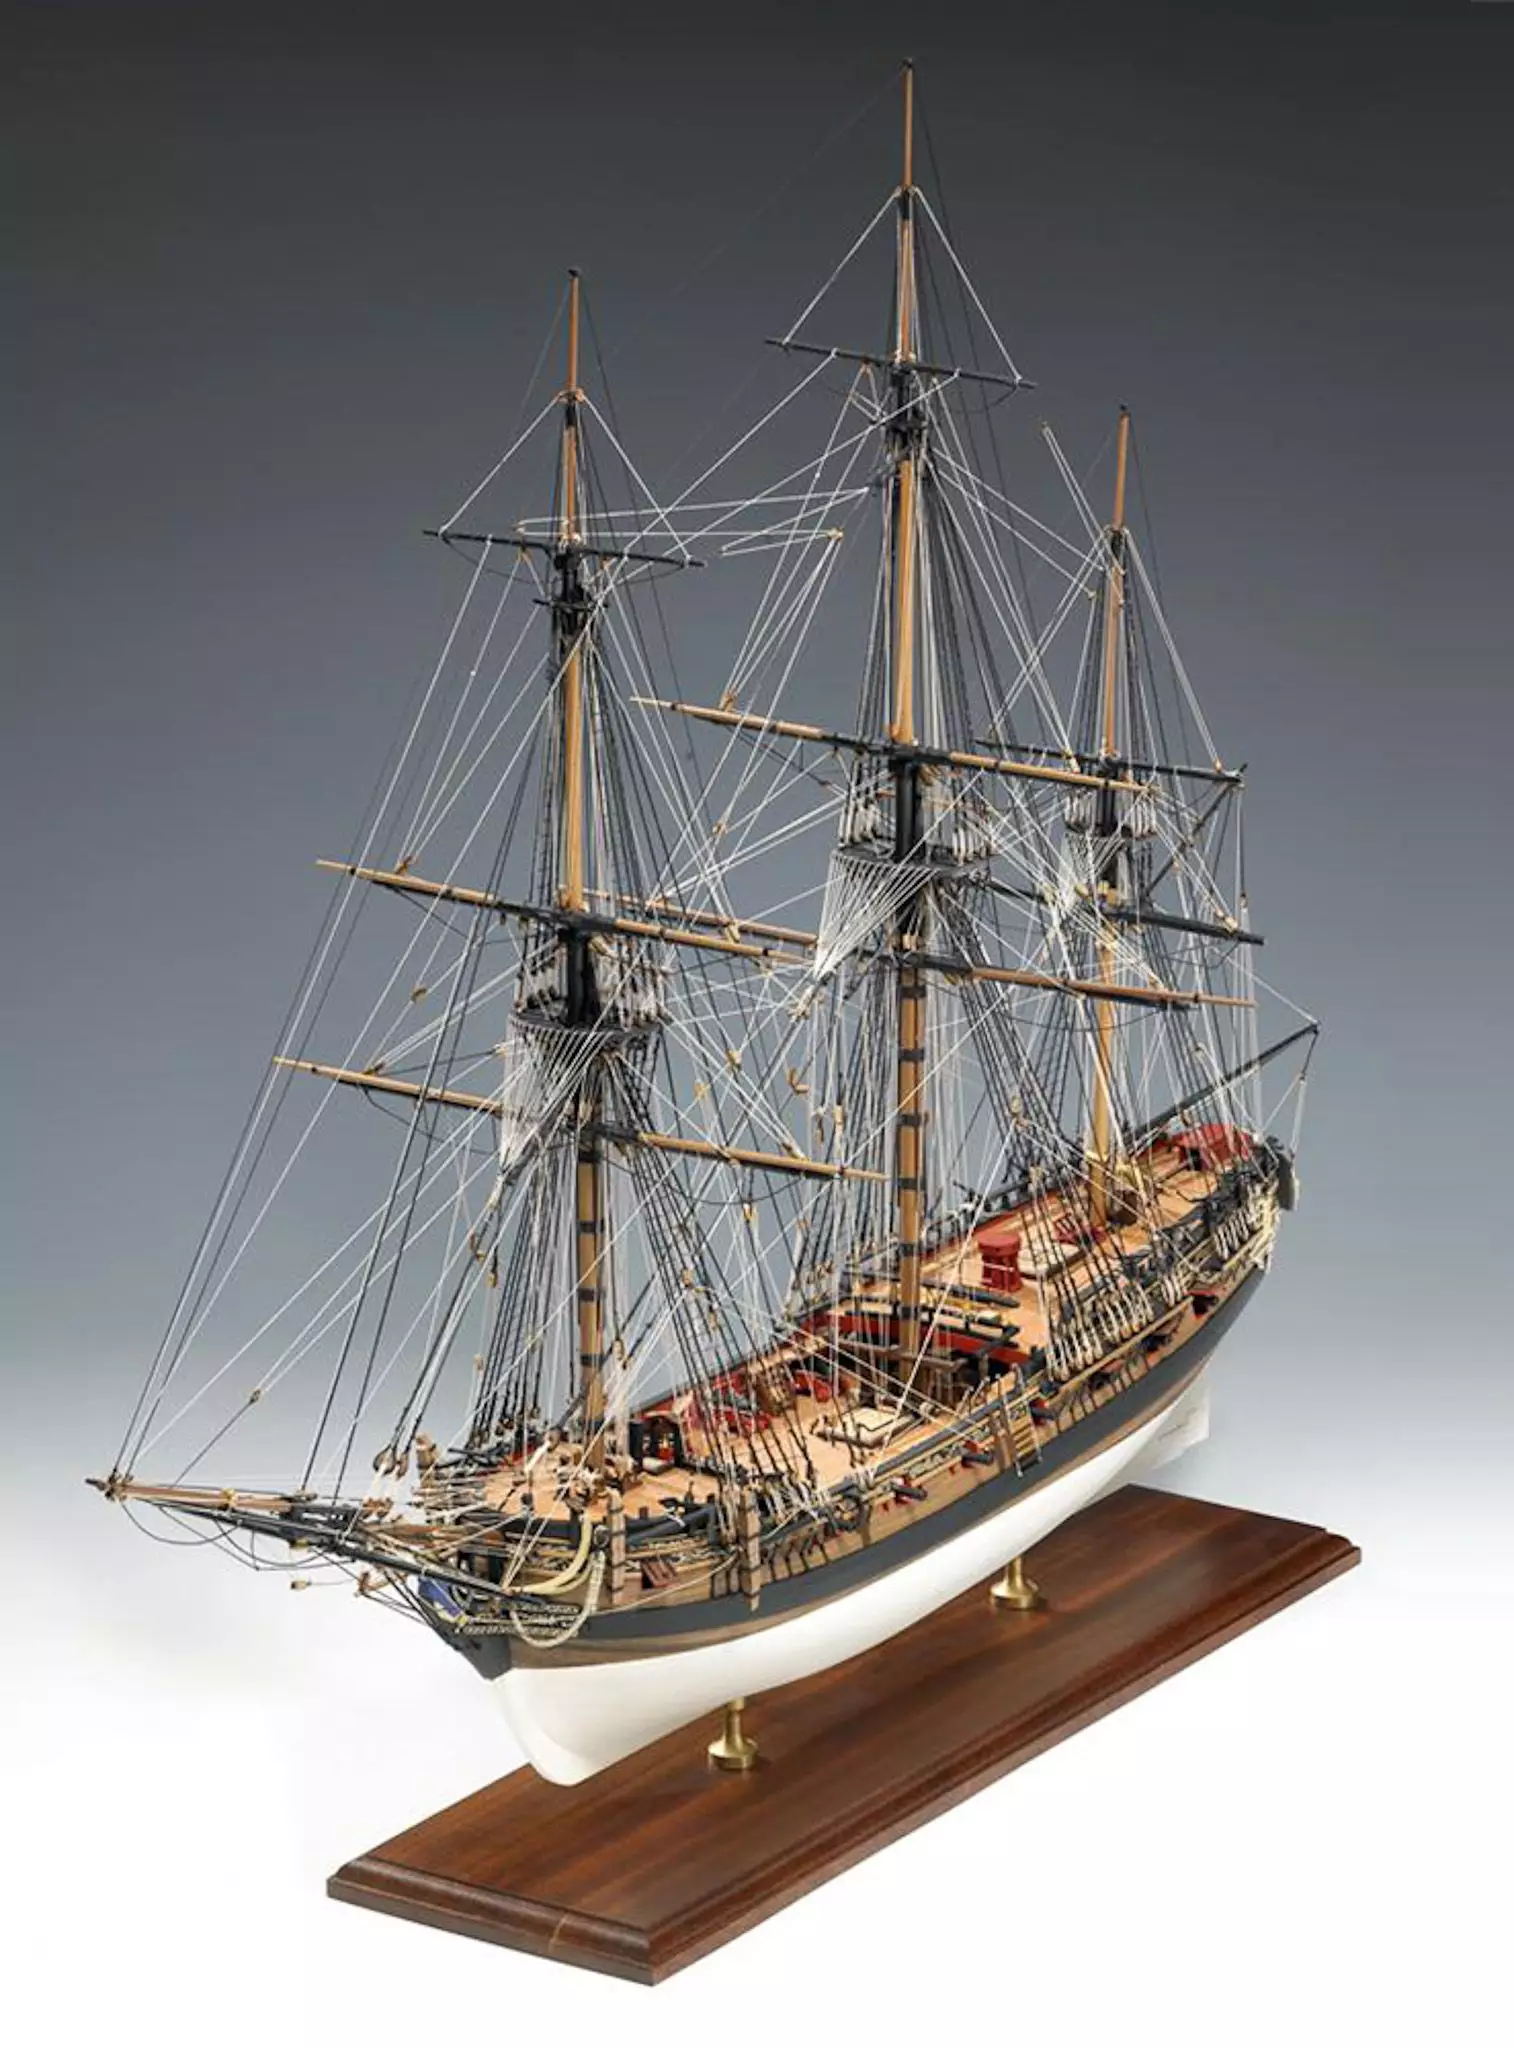 diy leudo wooden ship 1/48 models kits